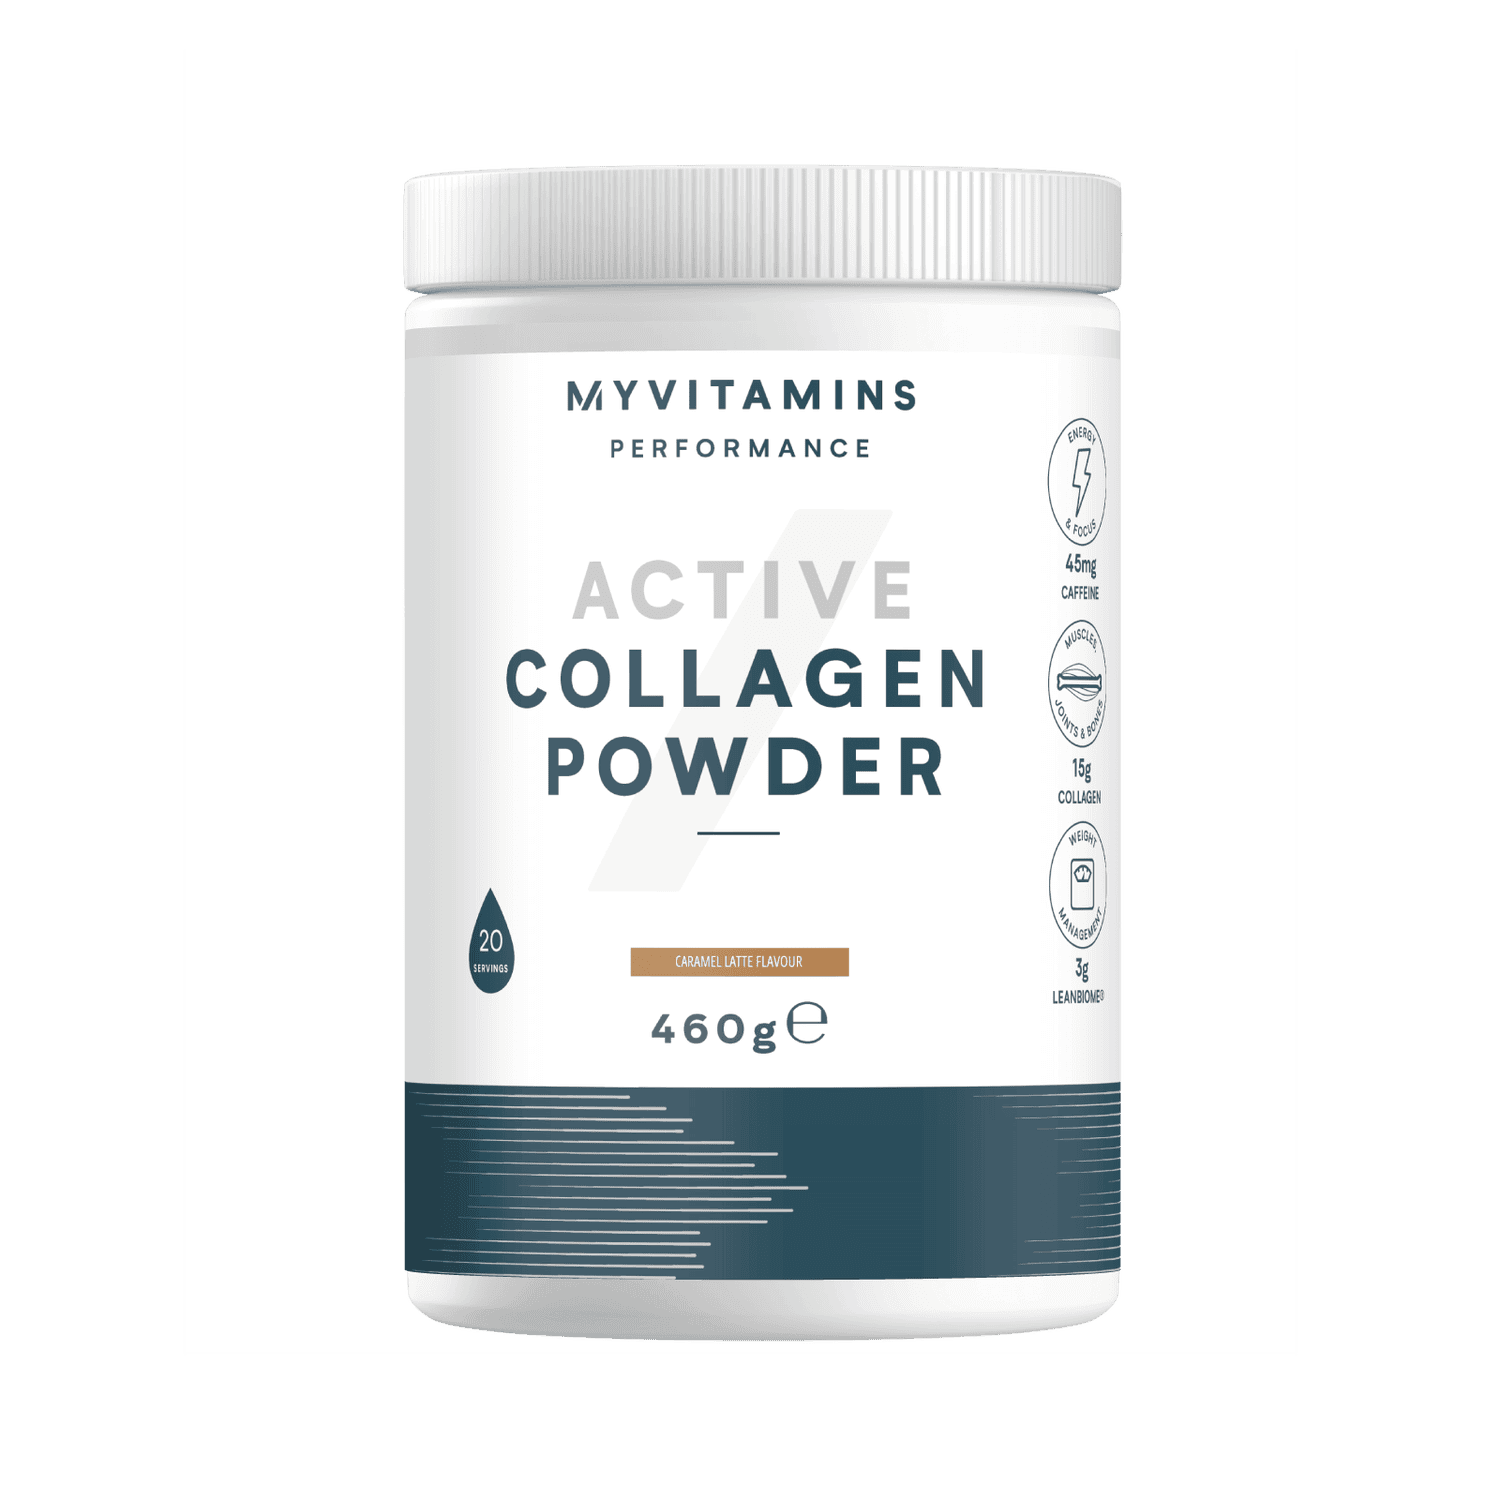 Myvitamins Active Collagen